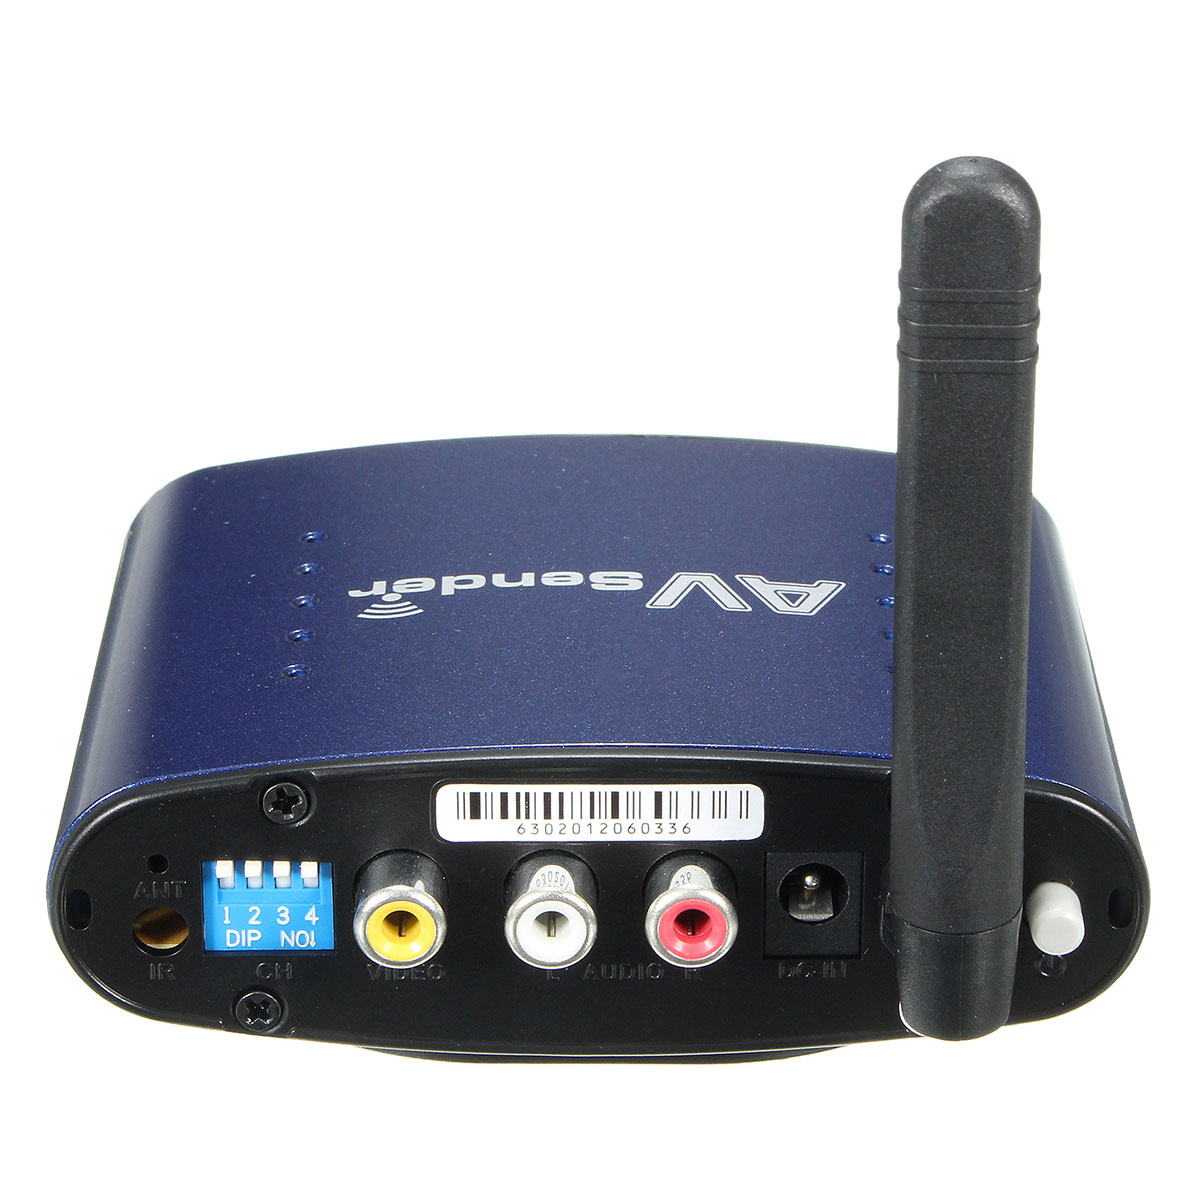 58GHz-Wireless-AV-TV-DVR-Transmitter-Receiver-Sender-Audio-Video-RCA-Cable-1100626